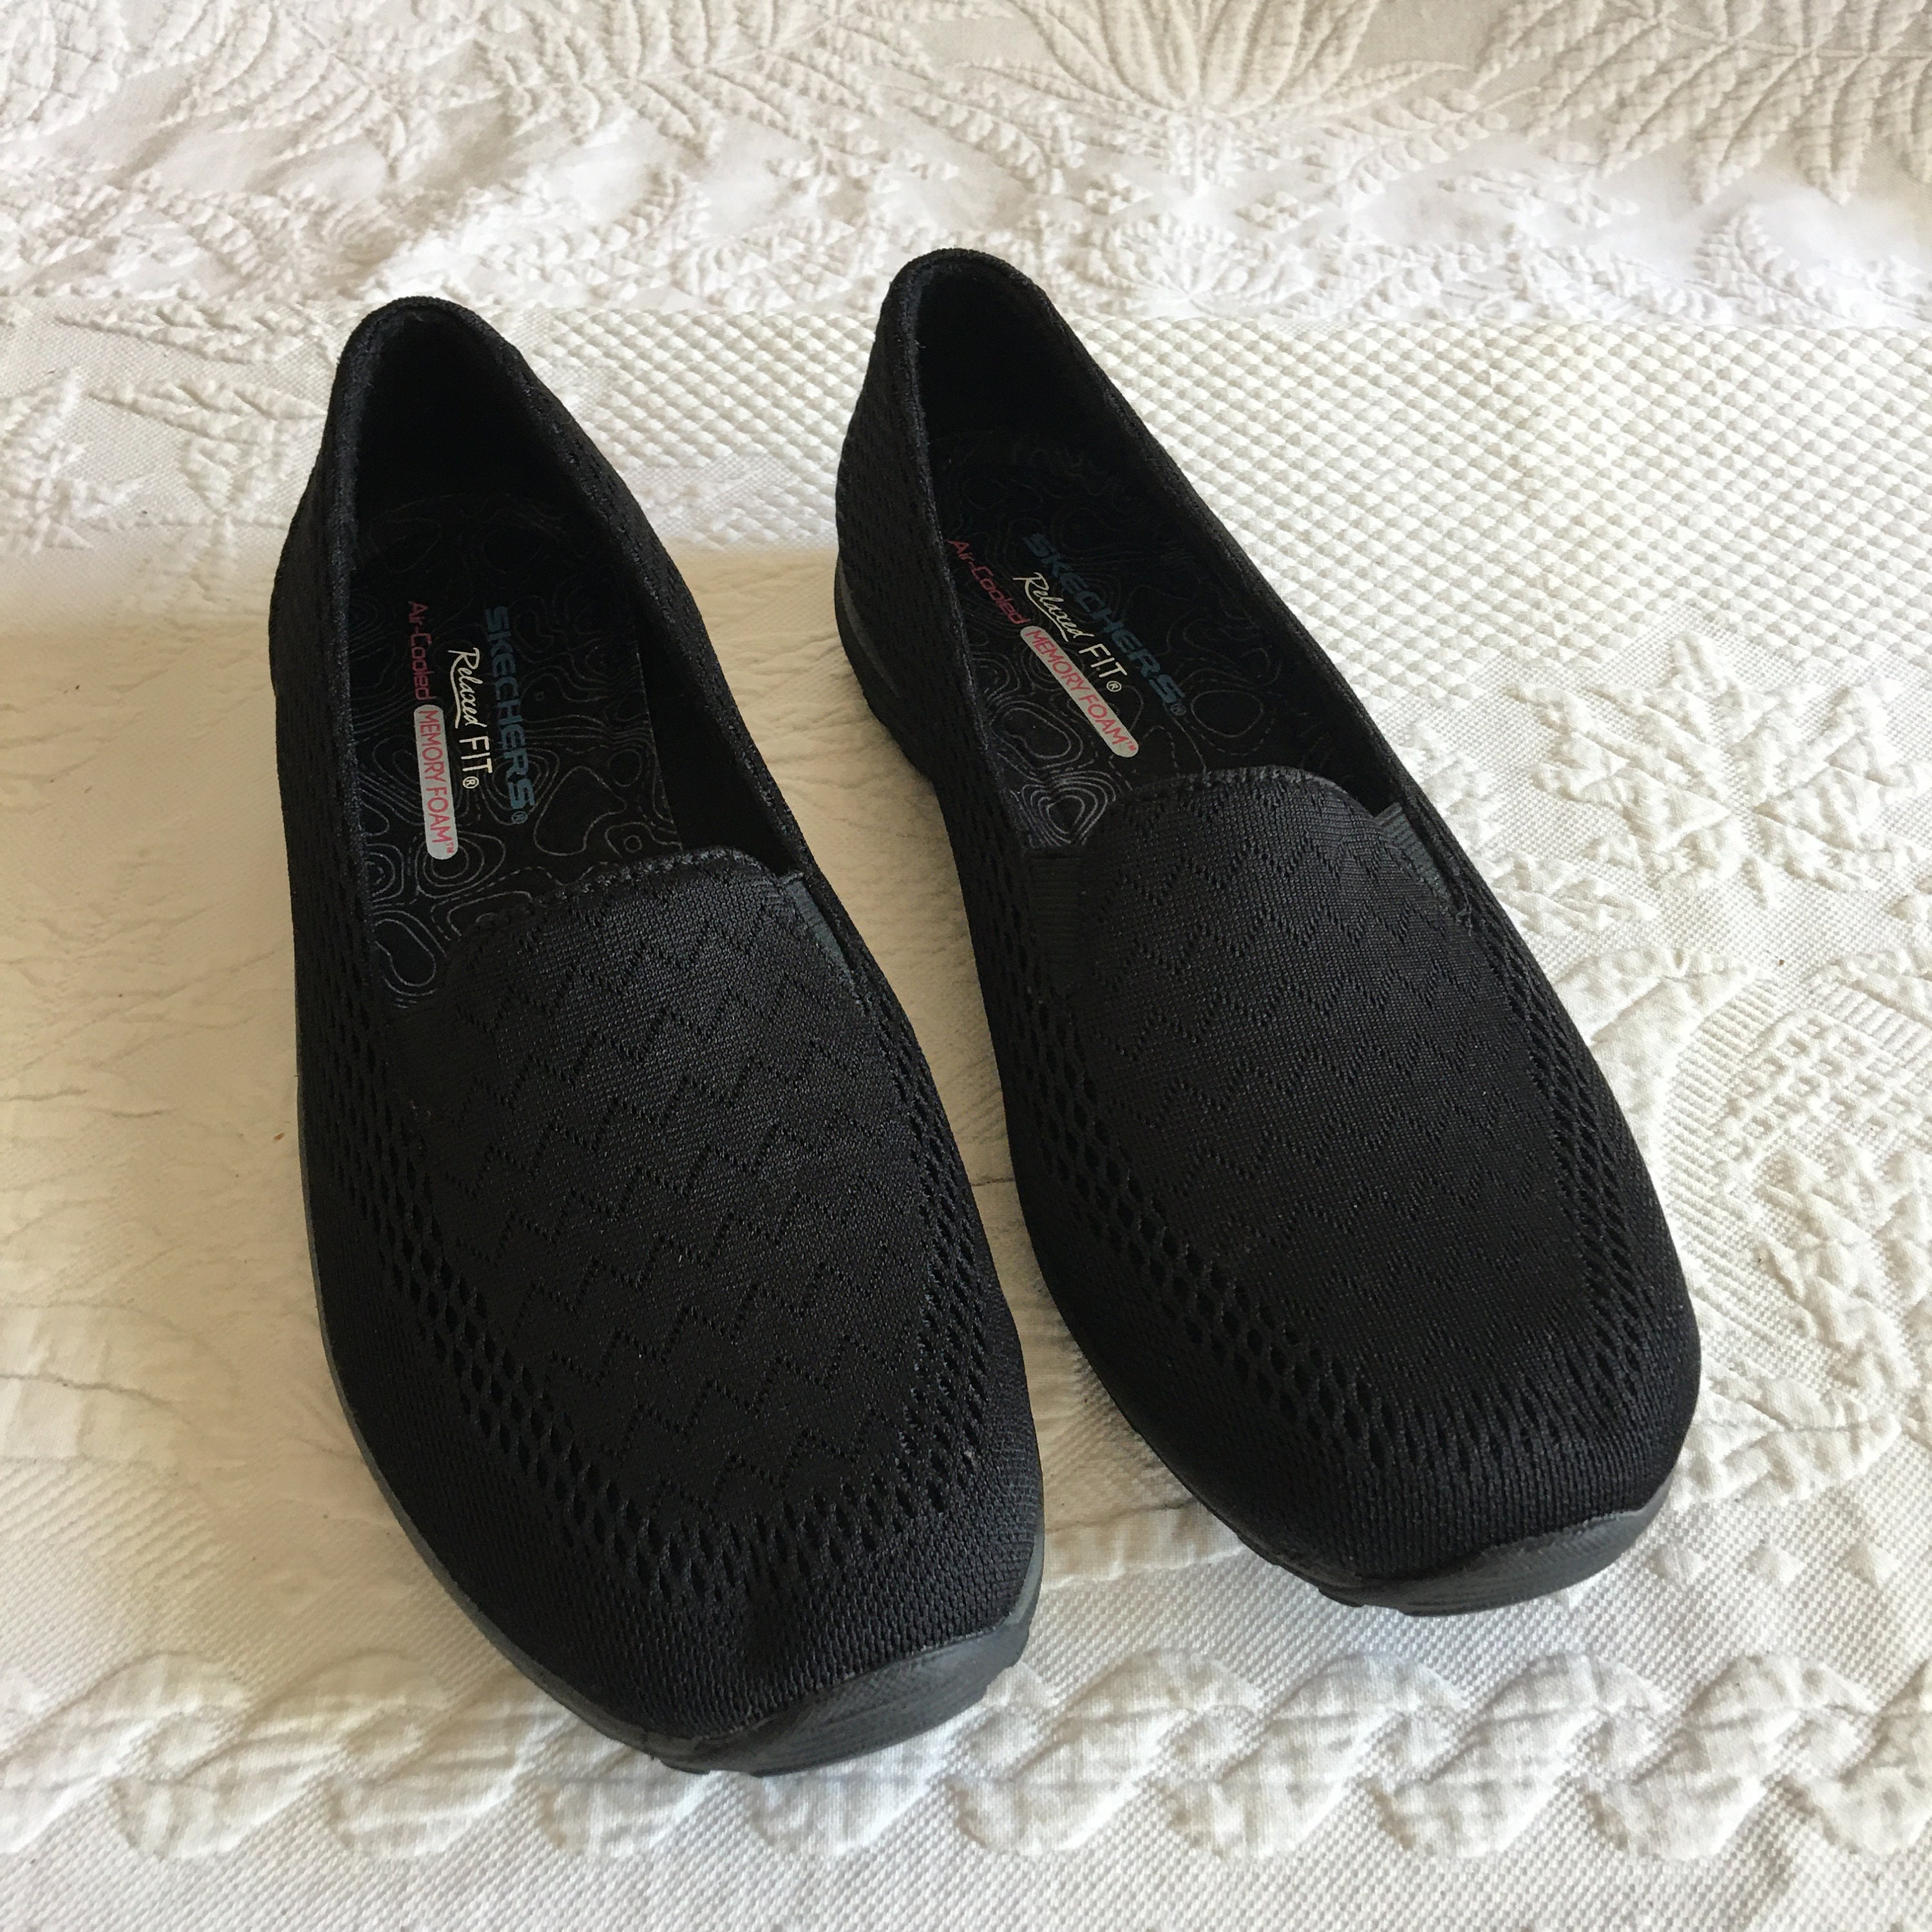 Skechers Memory Foam Light Blue Sandals wedge size 7.5 lace | eBay